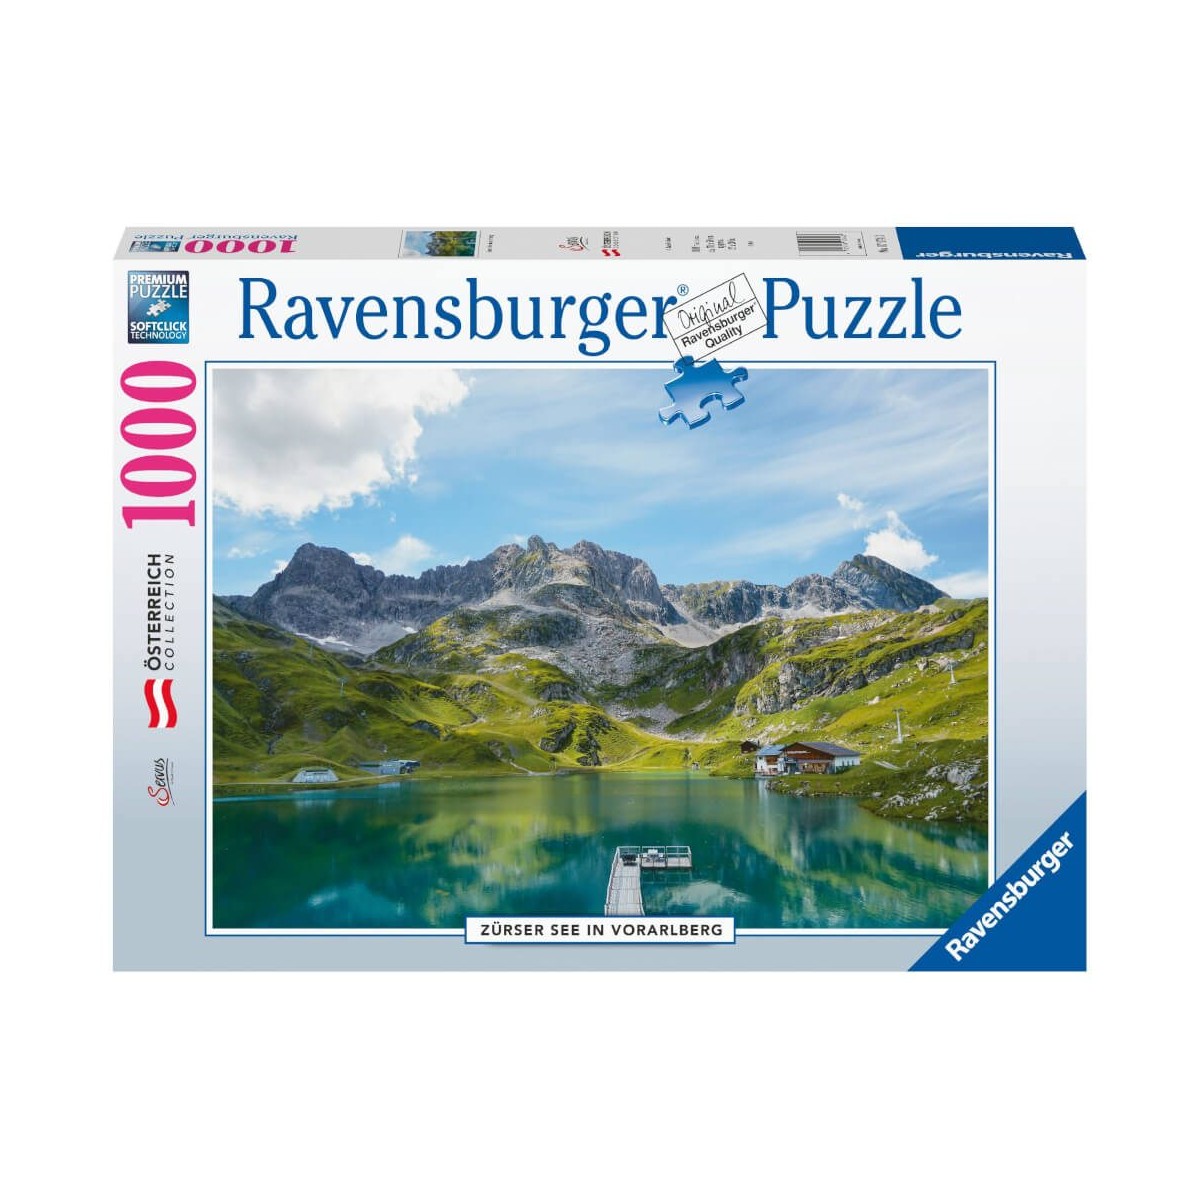 Ravensburger Puzzle 17174   Zürser See in Vorarlberg   1000 Teile Puzzle für Erwachsene und Kinder a